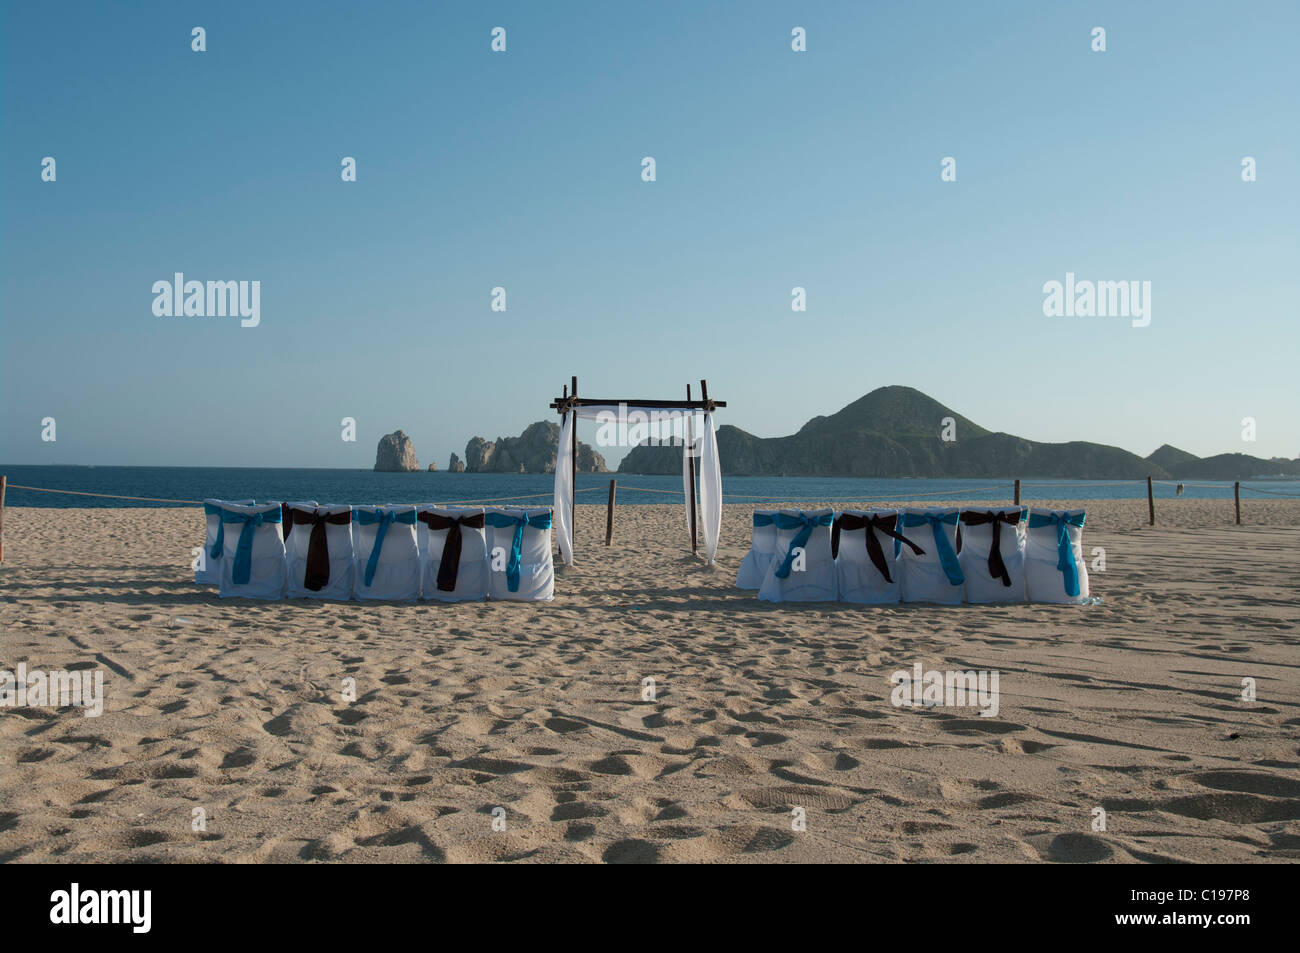 Ein verlassener Strand eingerichtet für eine Trauung.  Die Stuhlhussen sind weiß mit blauen und braunen Bögen. Ein Bogen erwartet das Paar. Stockfoto